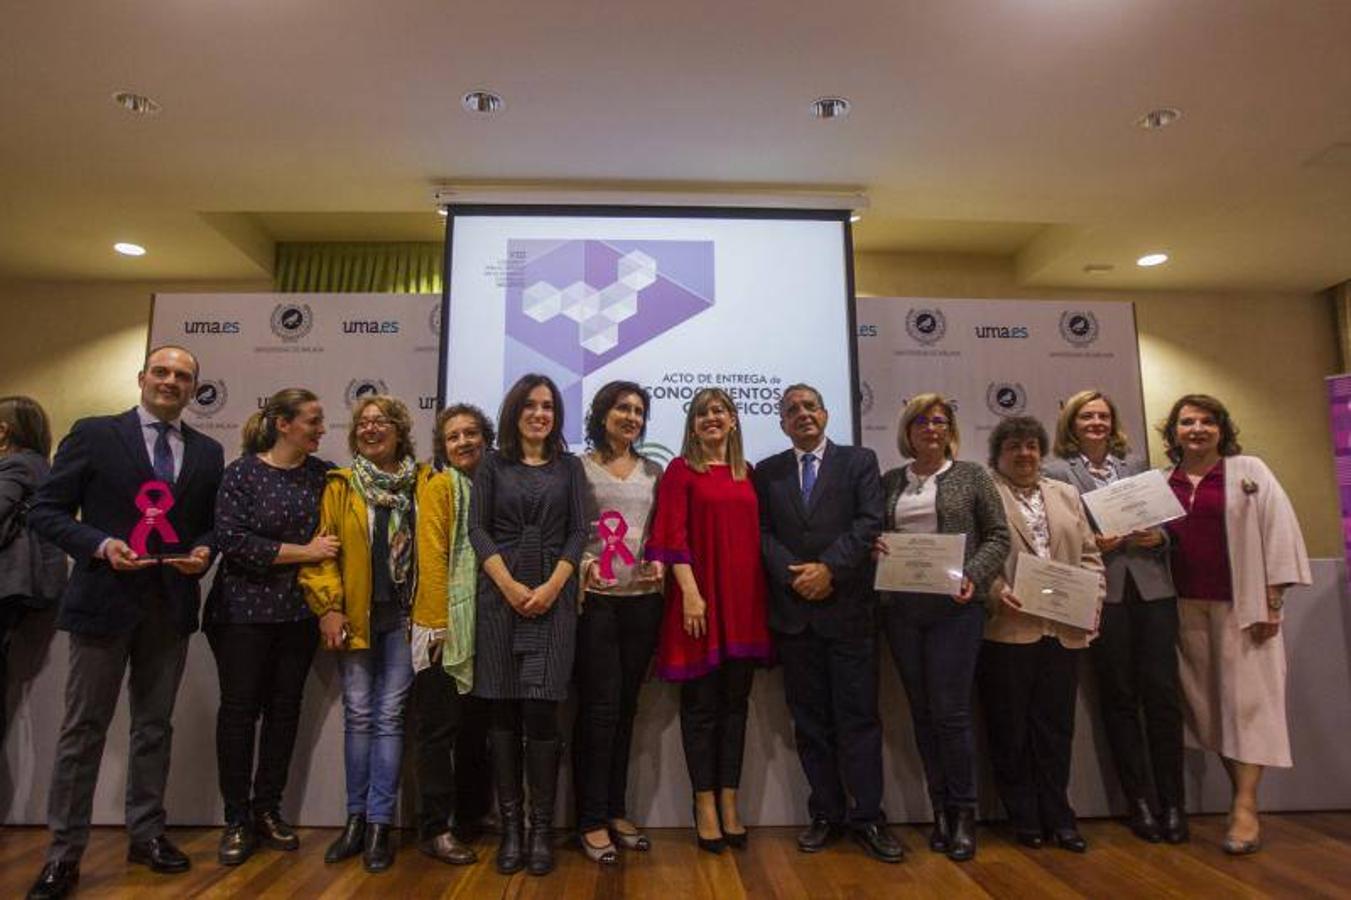 La Junta destaca la importancia de la investigación para aportar nuevas herramientas contra la violencia hacia las mujeres